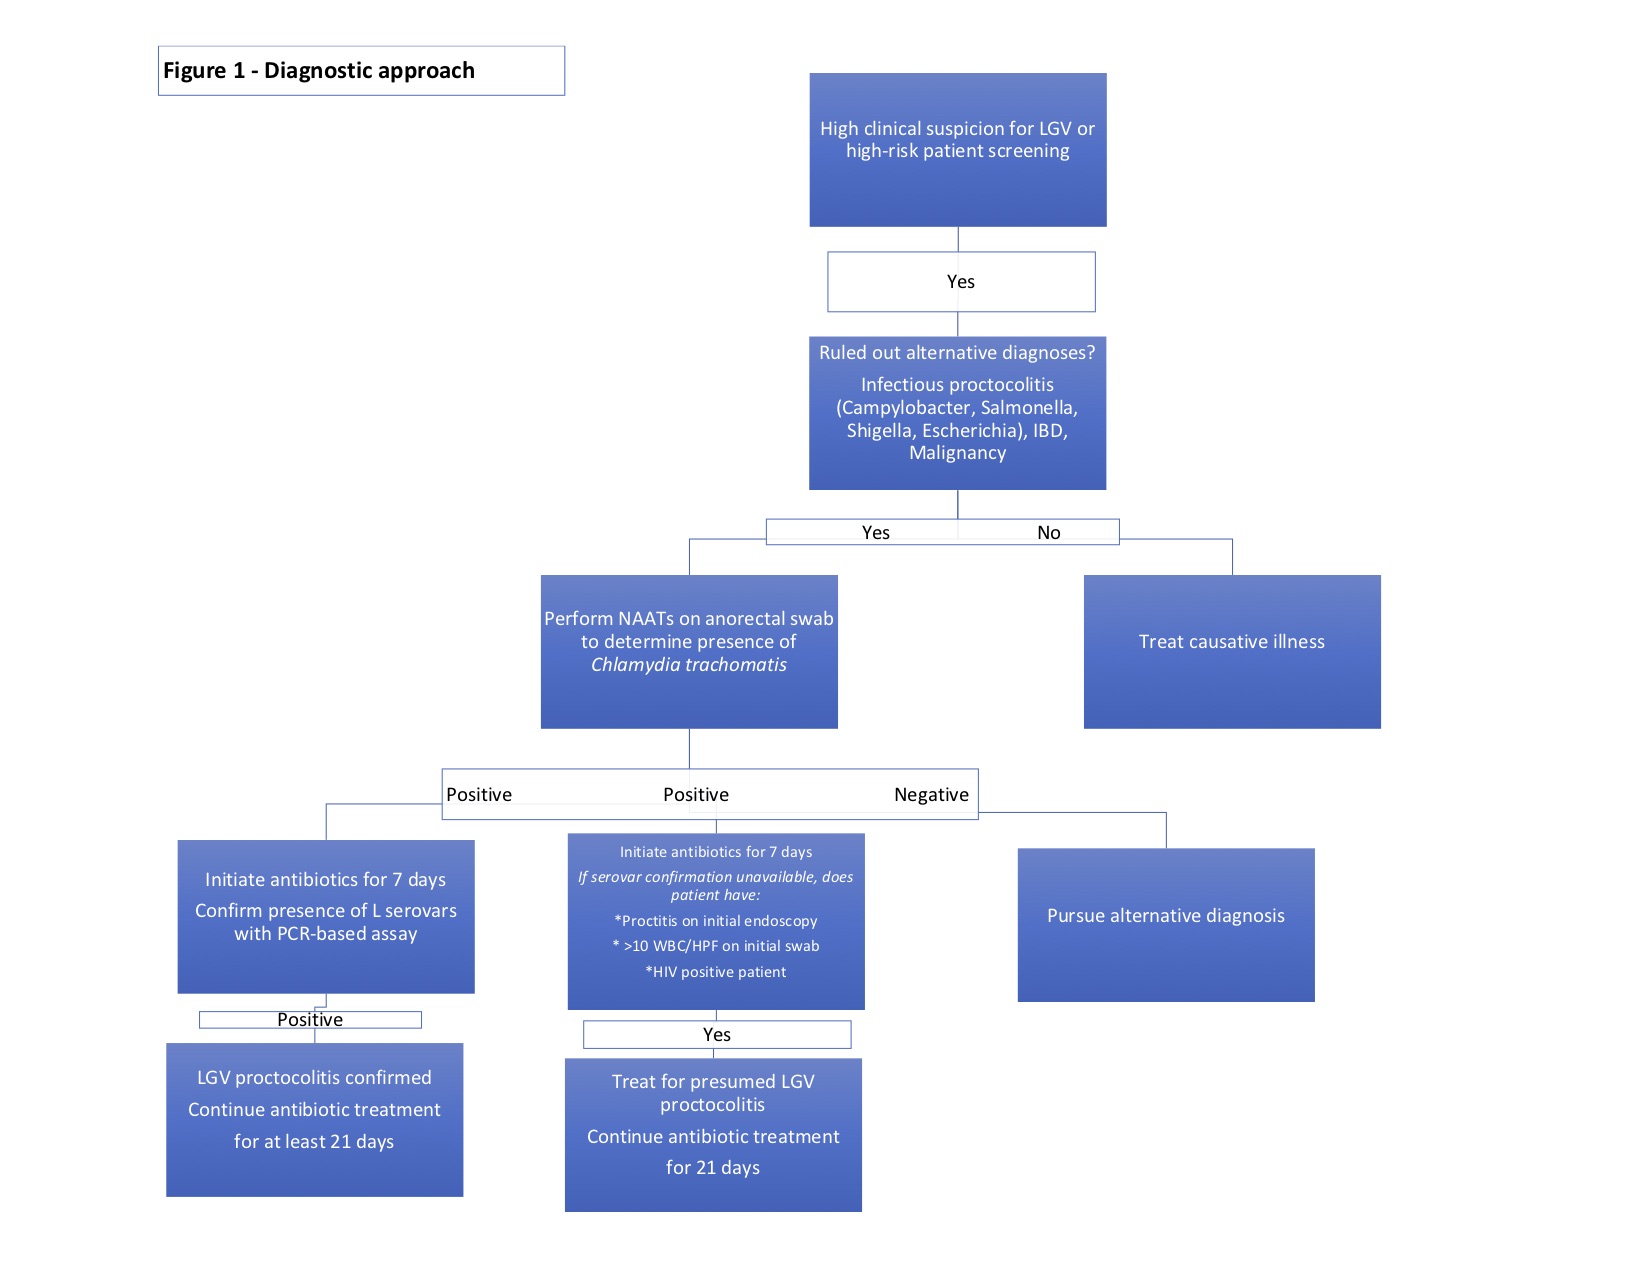 Diagnostic approach to LGV proctocolitis